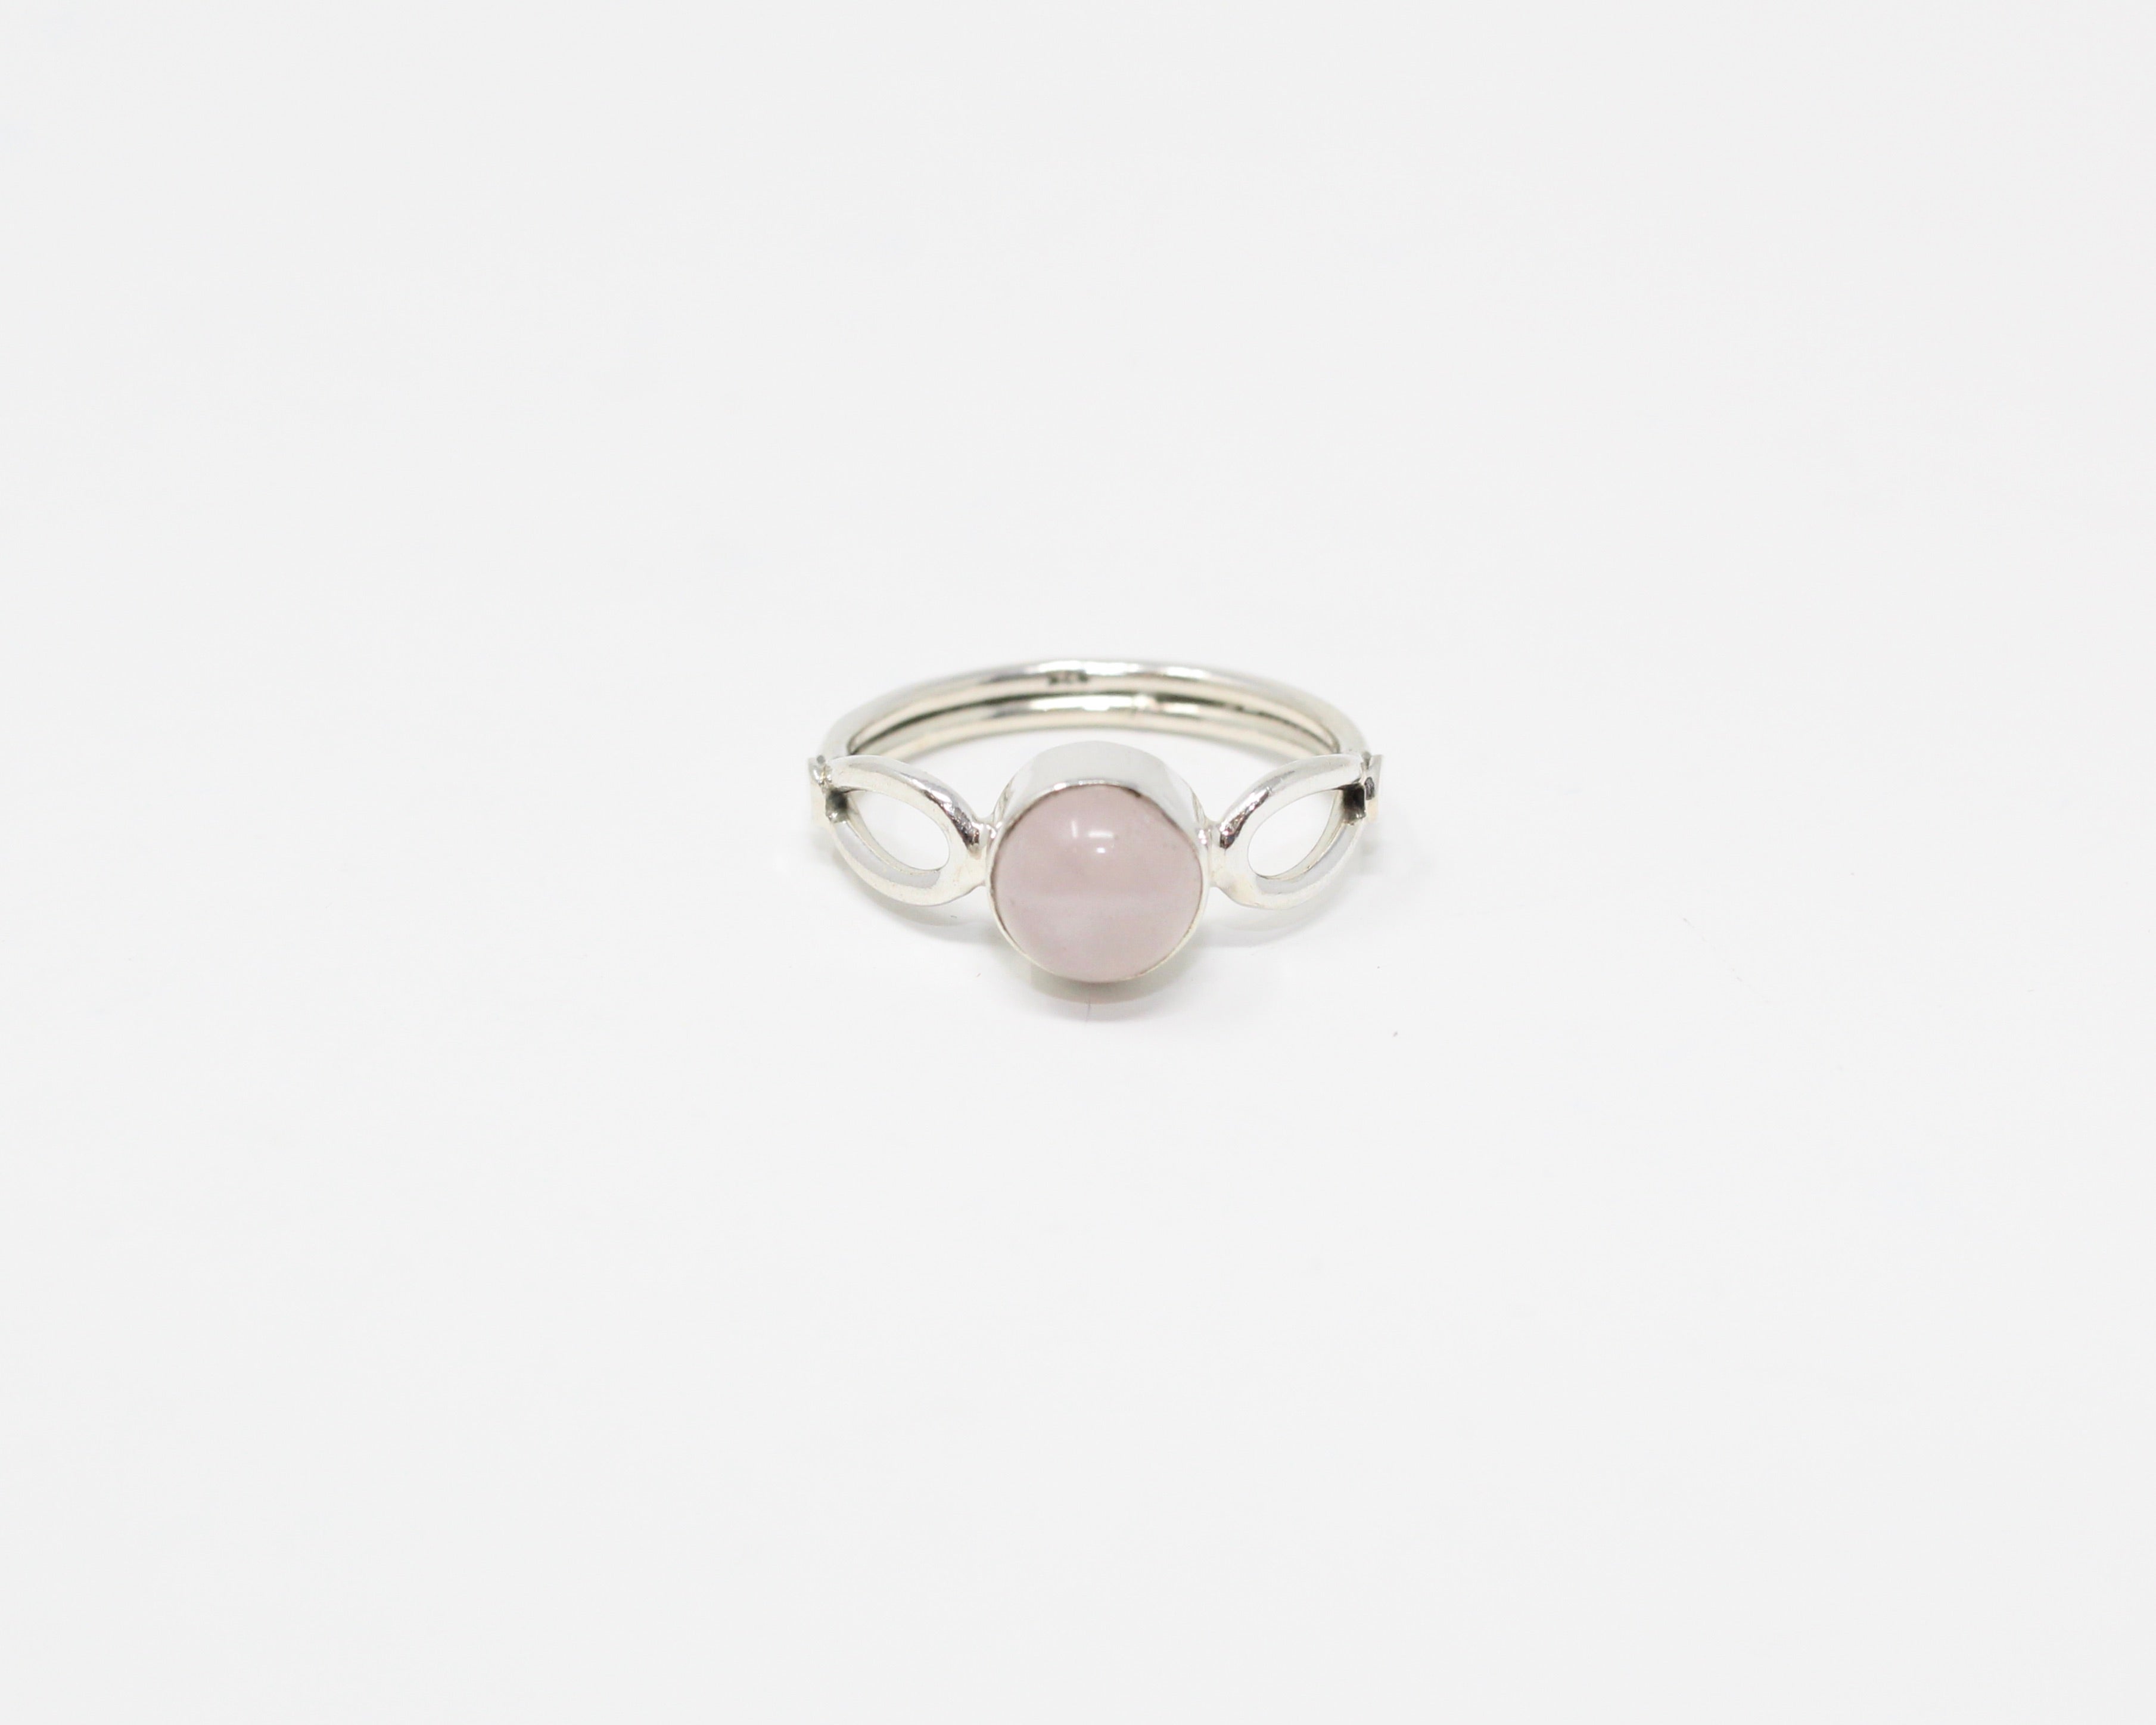 AMITIÉ, bague argent sterling et pierre semi-précieuse, quartz rose.